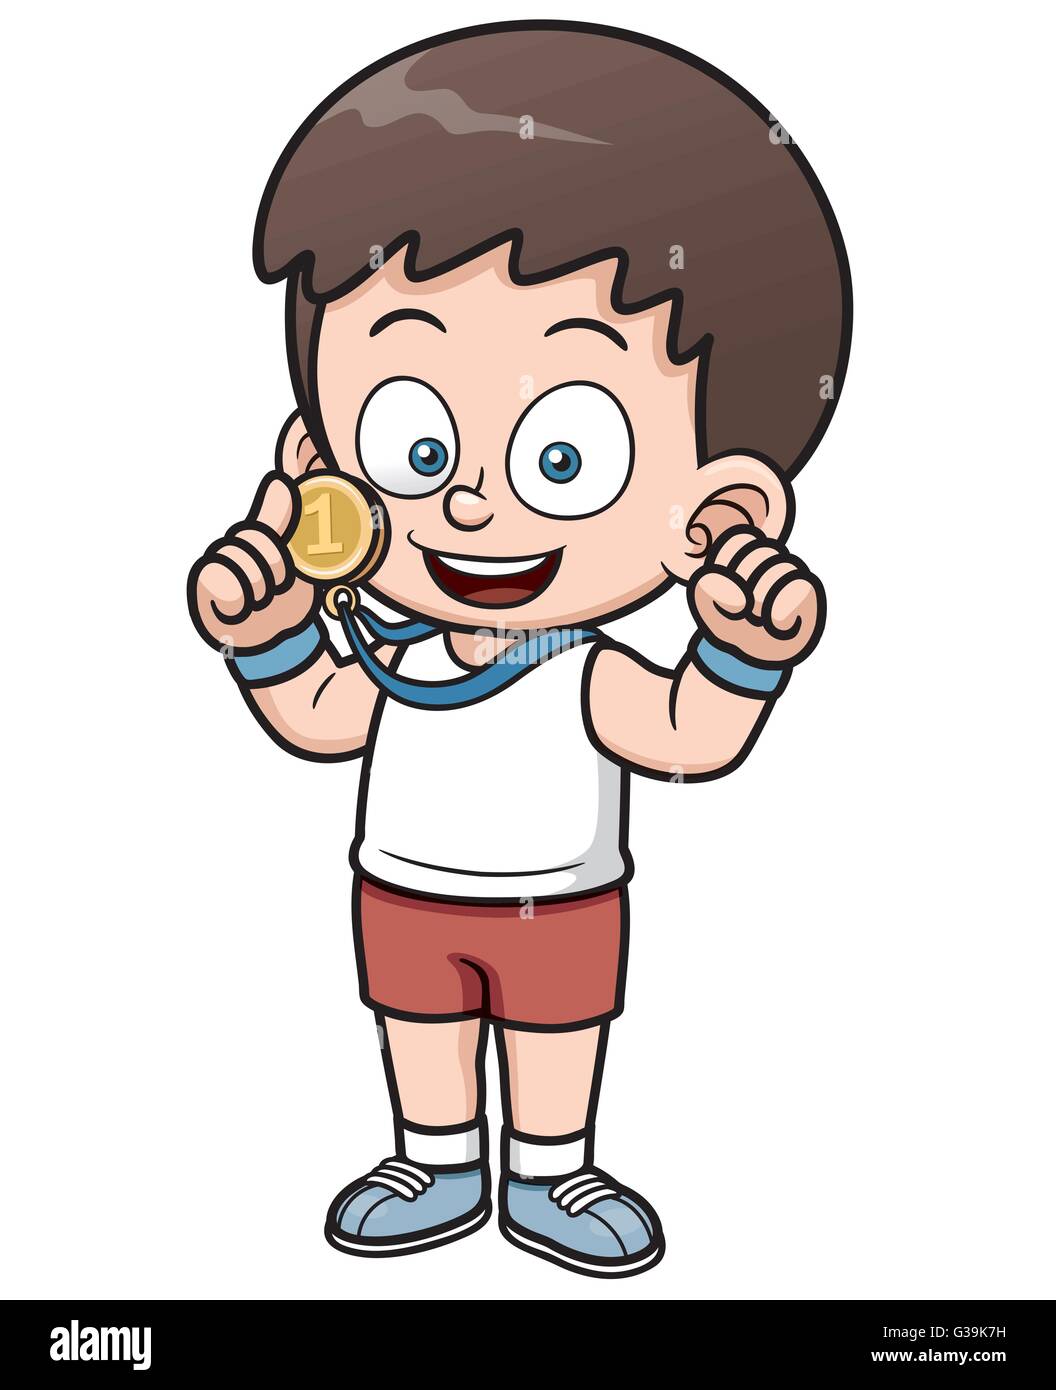 Vector illustration of Boy winner cartoon Stock Vector